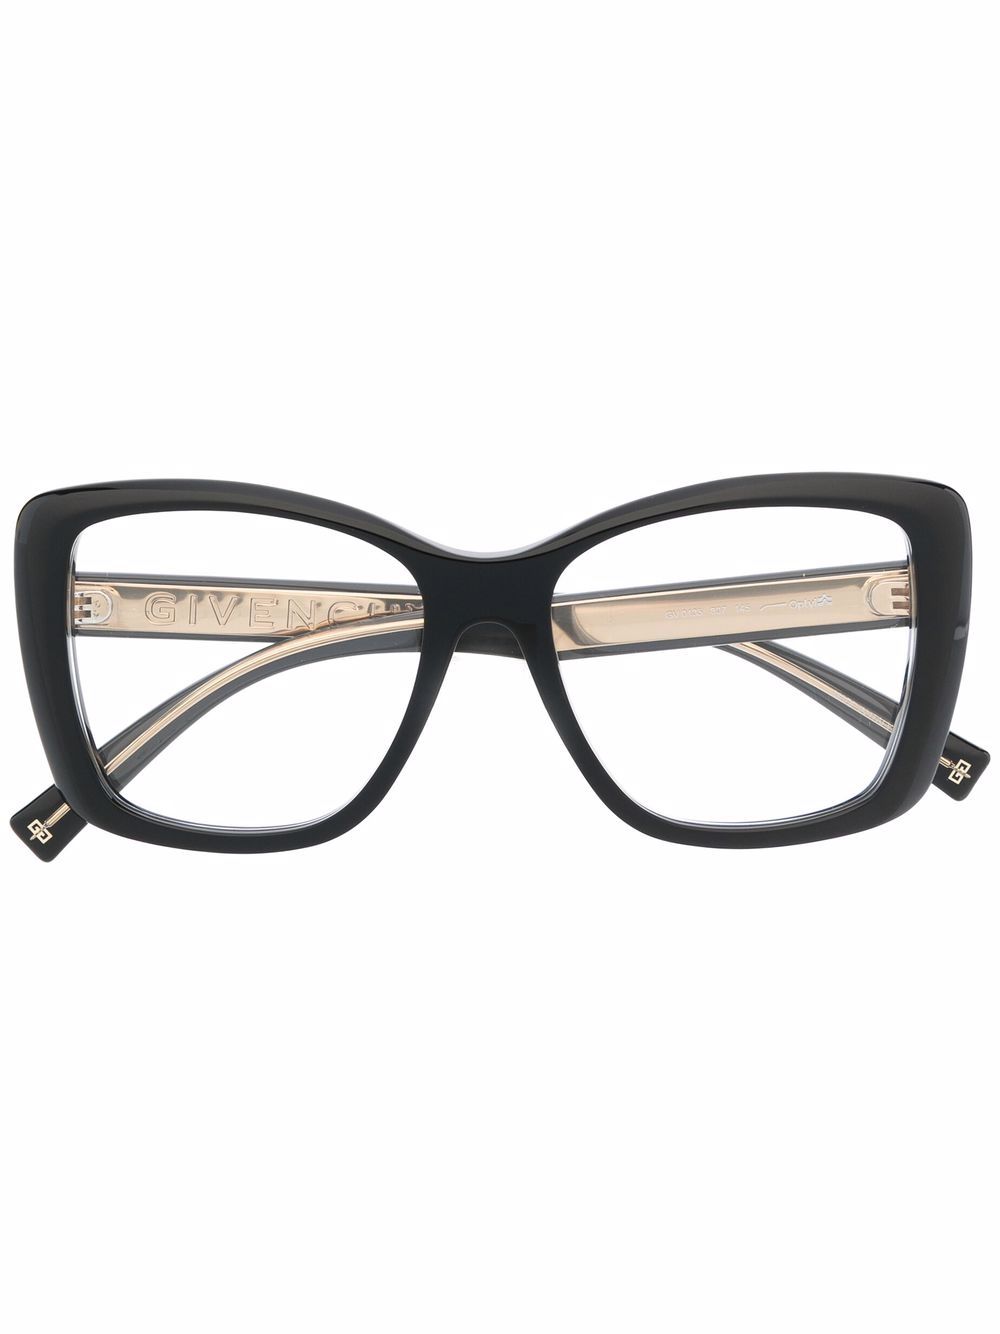 фото Givenchy eyewear очки в квадратной оправе